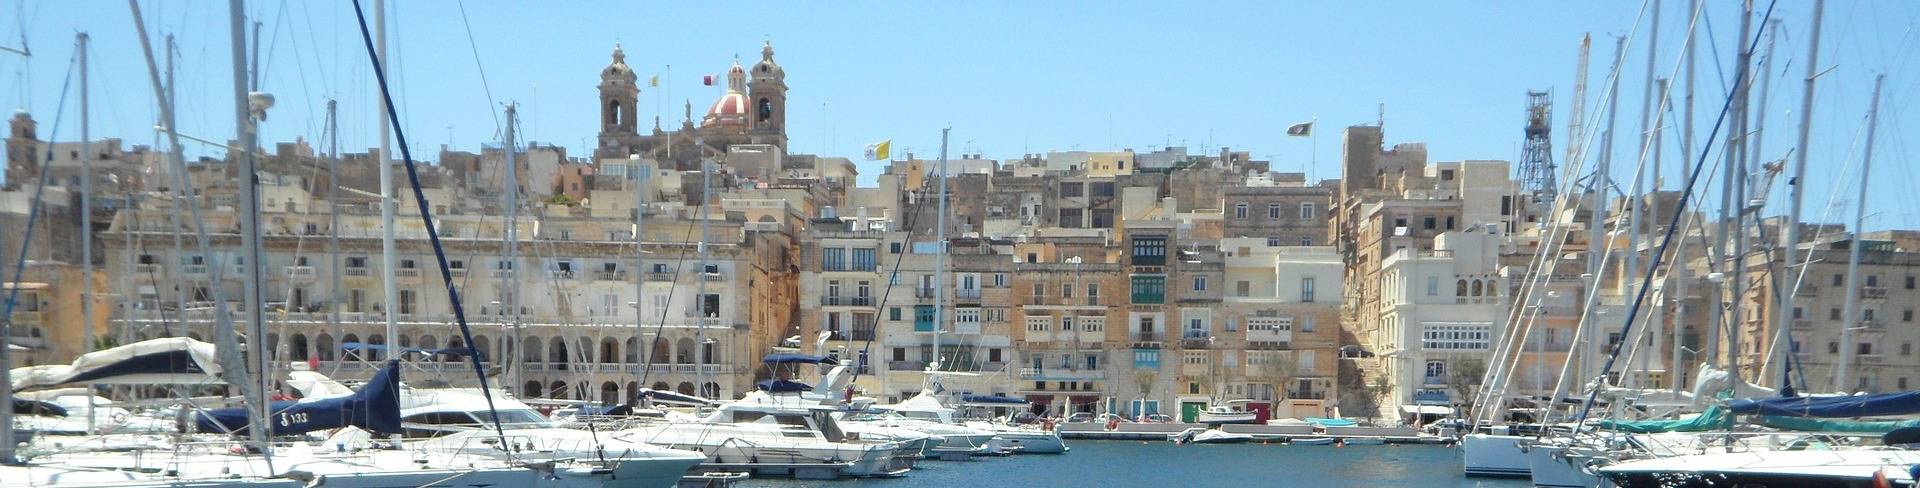 Валетта - город на Мальте